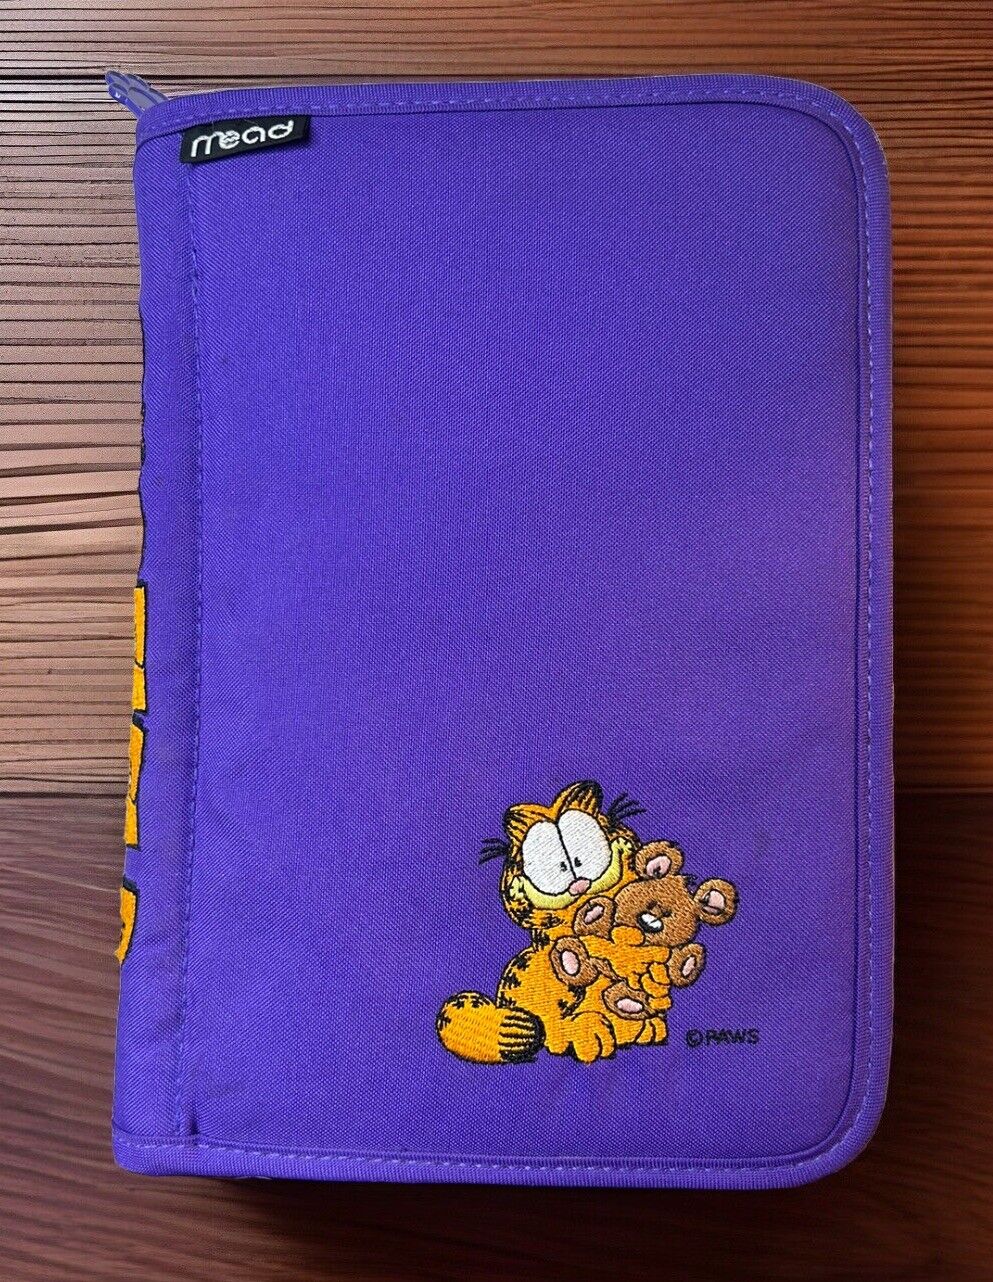 Vintage 1997 Garfield Mead Student Day Planner - Zip Paws Brand Jim Davis